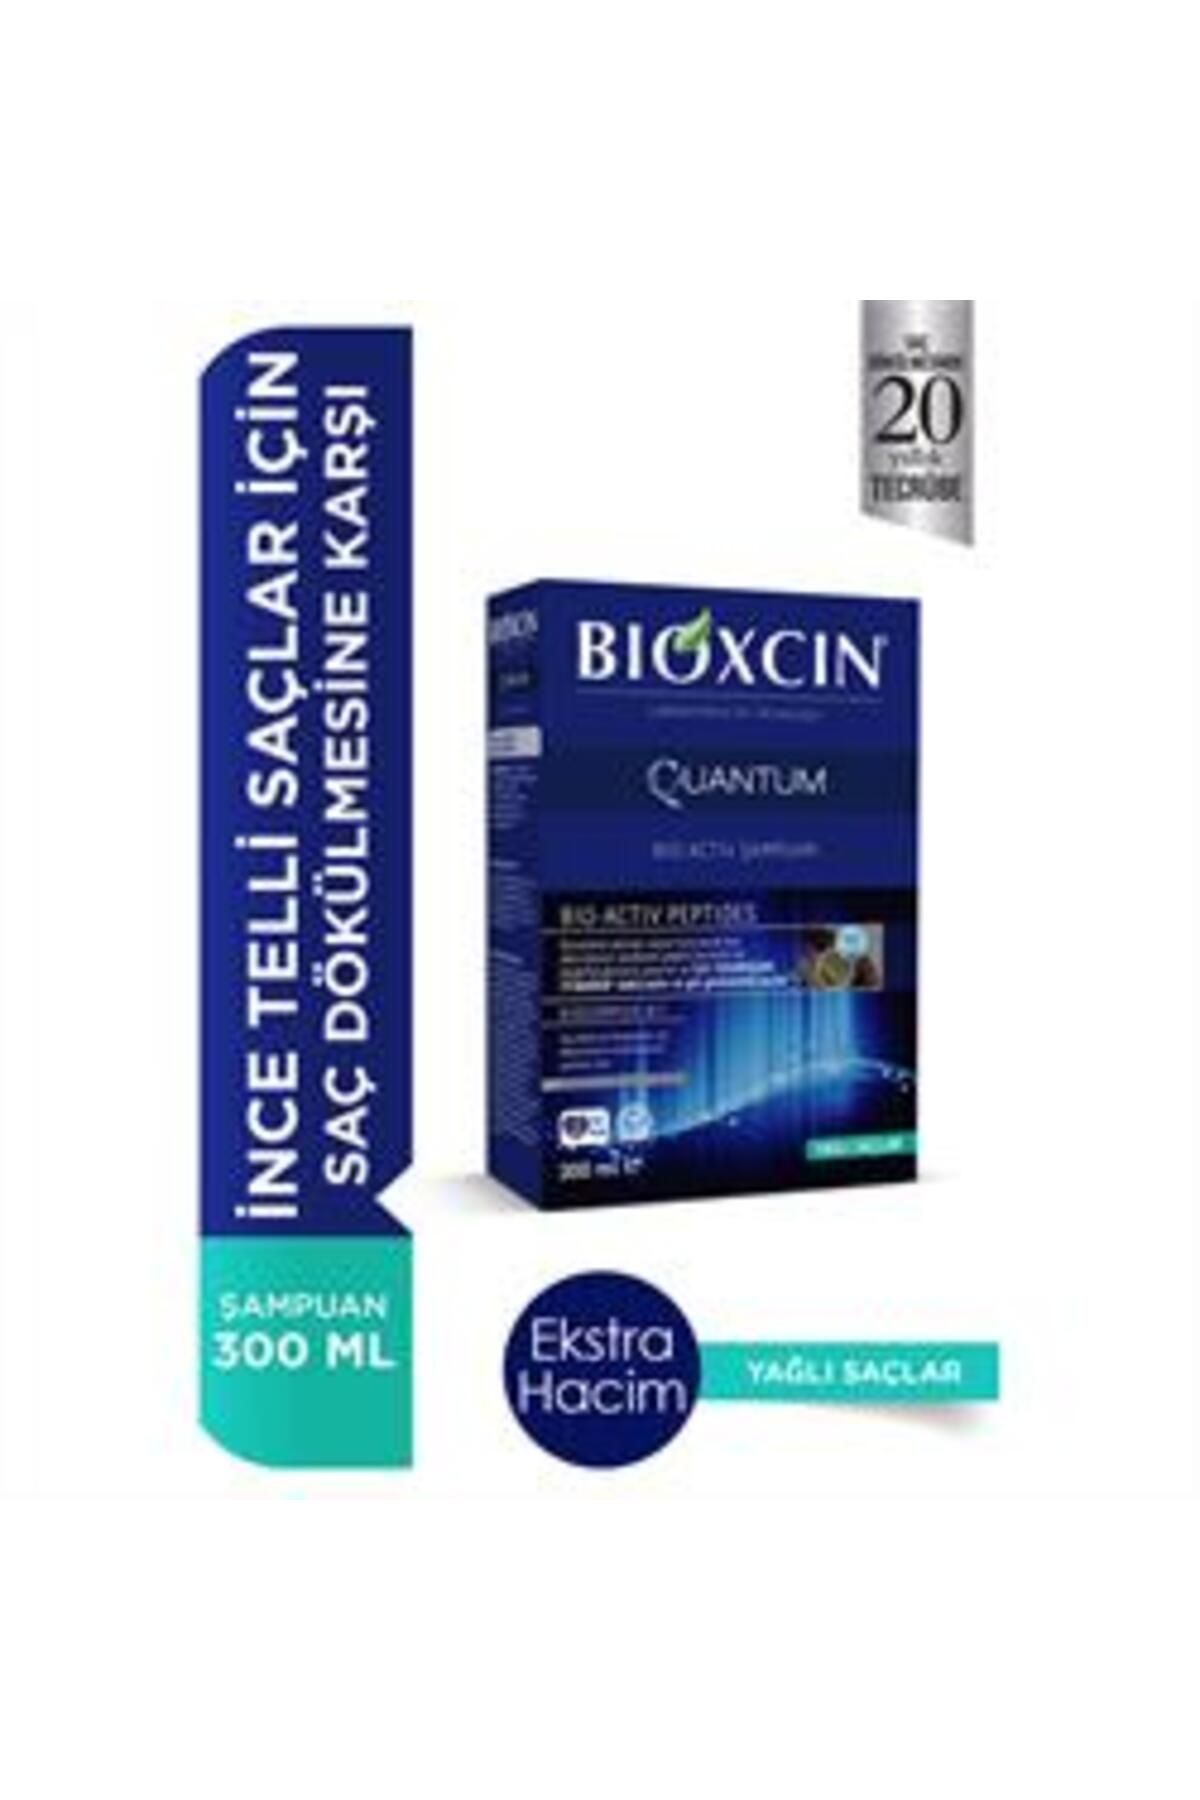 Bioxcin ( KİL MASKESİ HEDİYE ) Bioxcin Quantum Şampuan Yağlı Saçlar İçin Şampuan 300 ml ( 1 ADET )